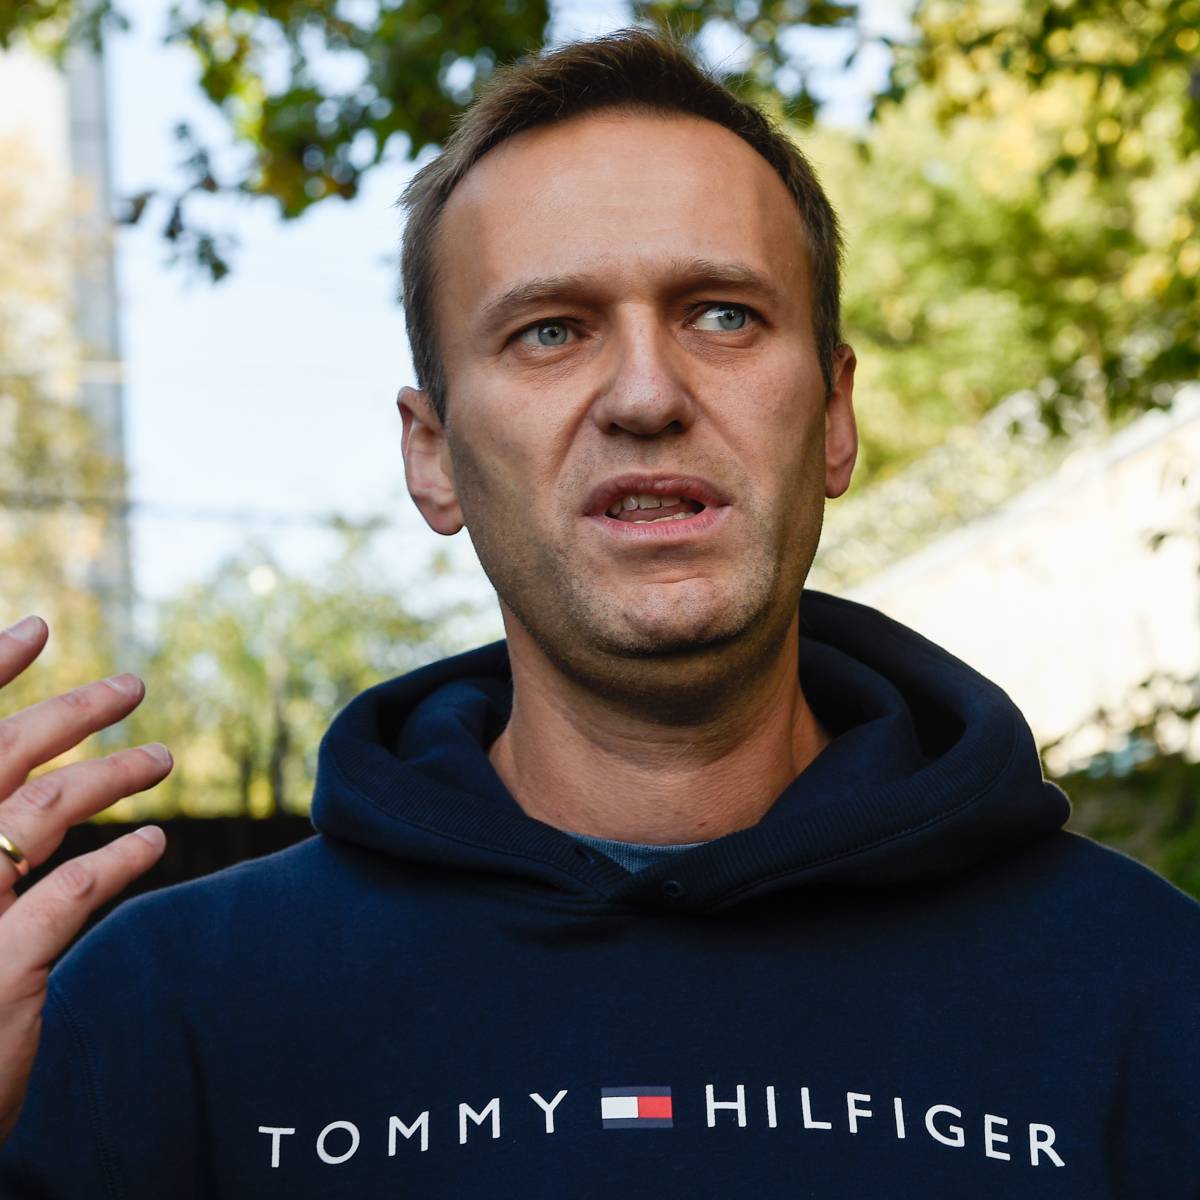 В штабах Навального по всей России проходят обыски